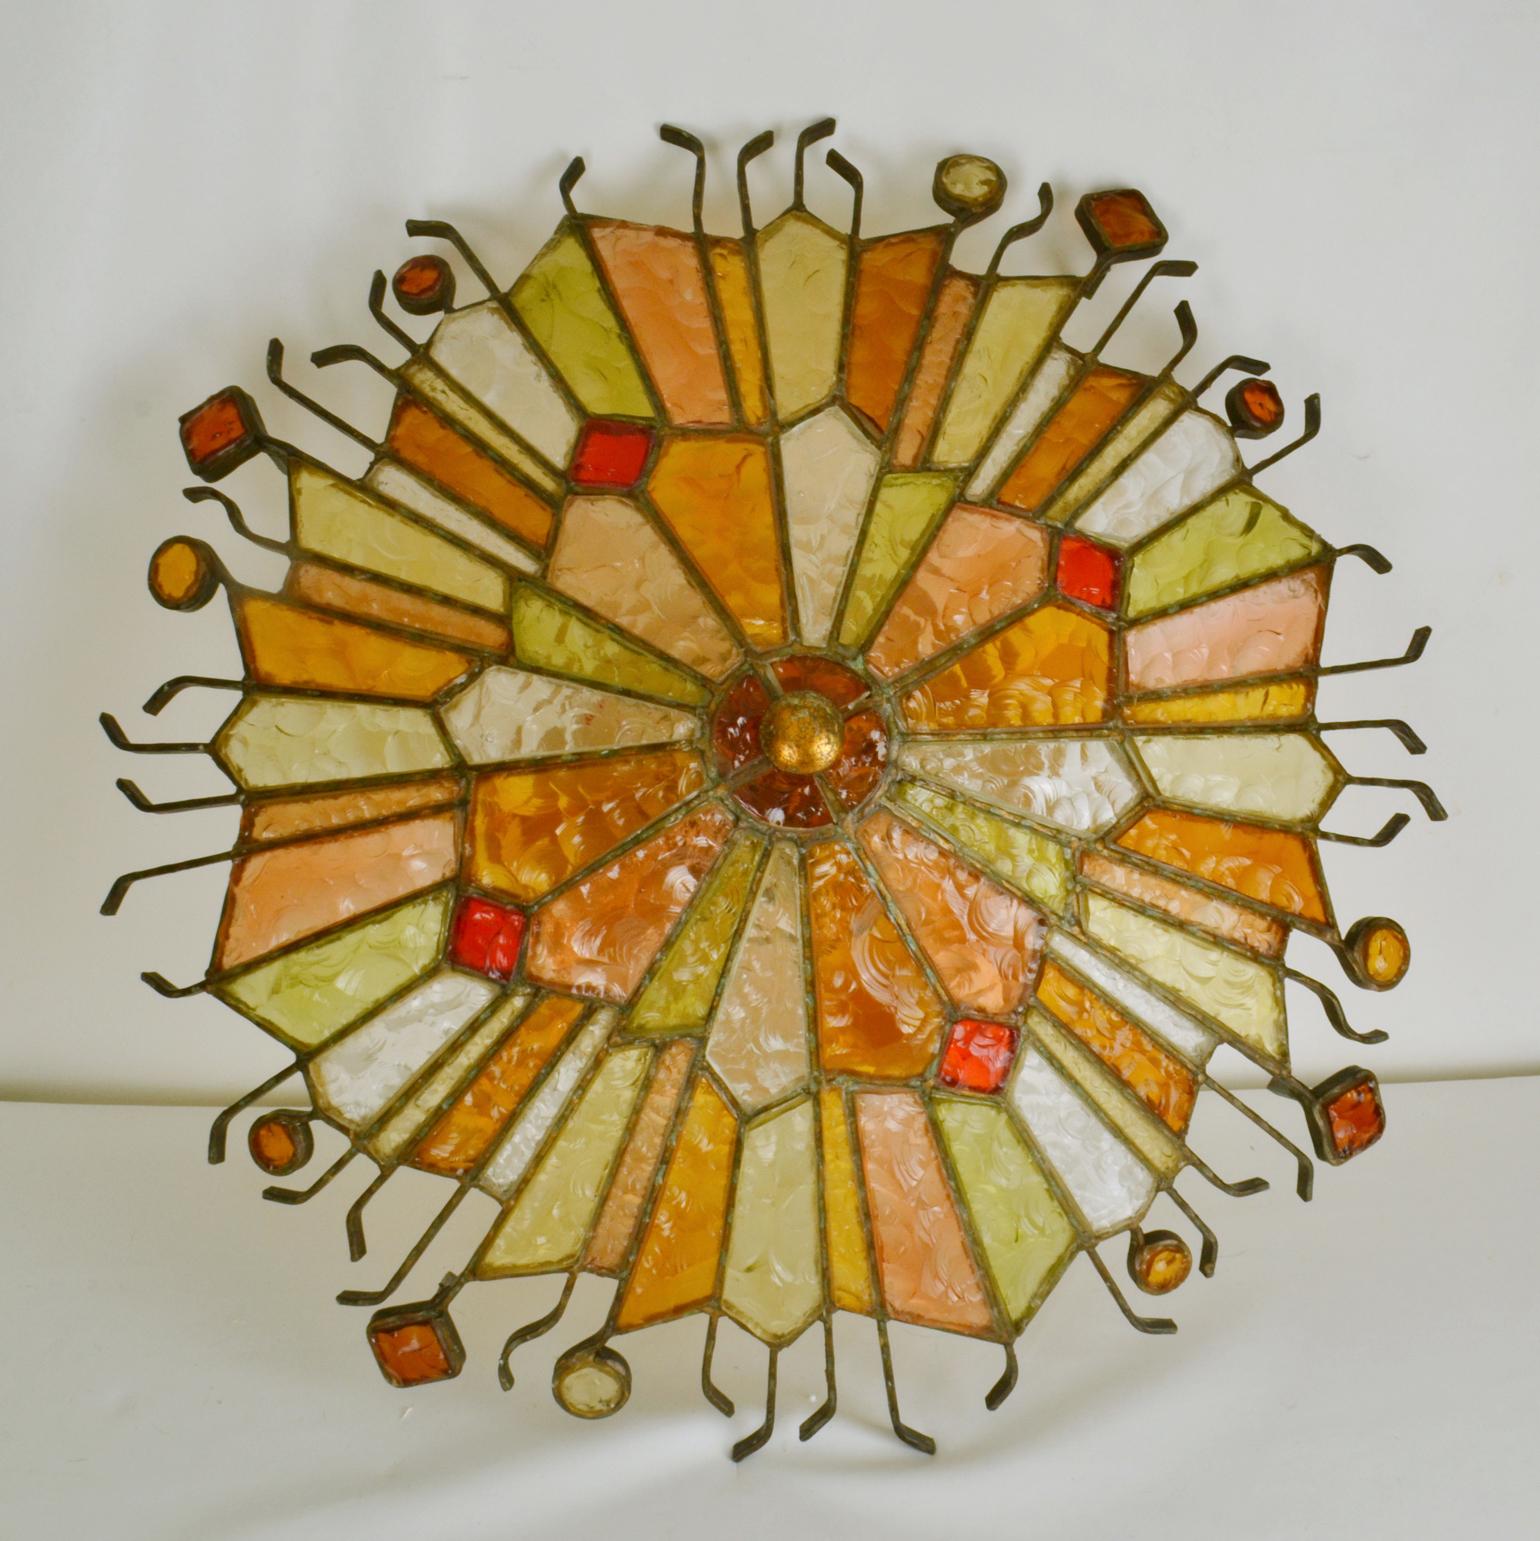 Grand plafonnier encastré de Poliarte à Vérone, Italie, vers 1975. La lampe rayonne en segments géométriques de verre translucide et coloré alternés, ébréchés à la main, créant un relief circulaire pour briser la lumière, dans les couleurs ambre,